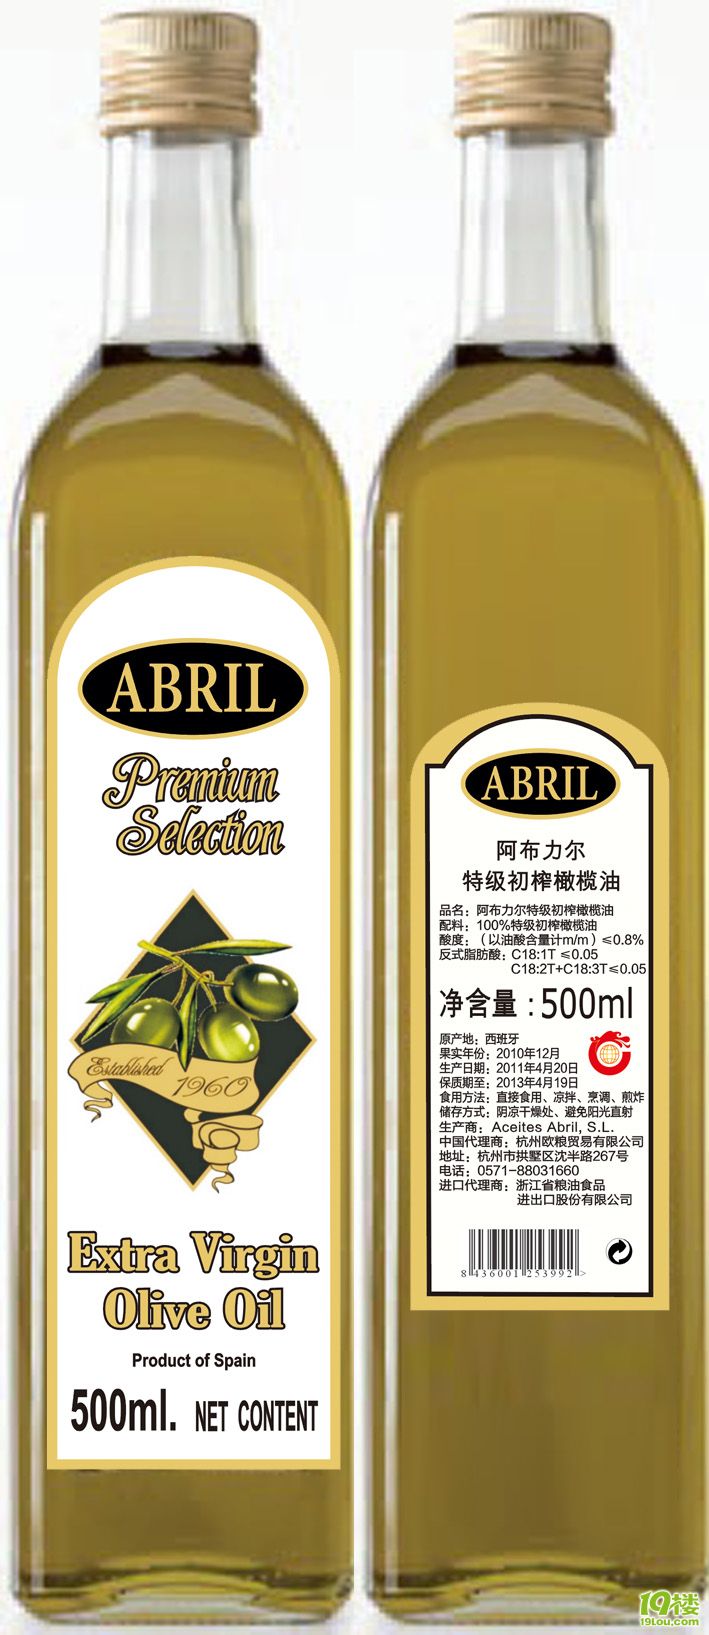 广州芳村港橄榄油进口清关代理